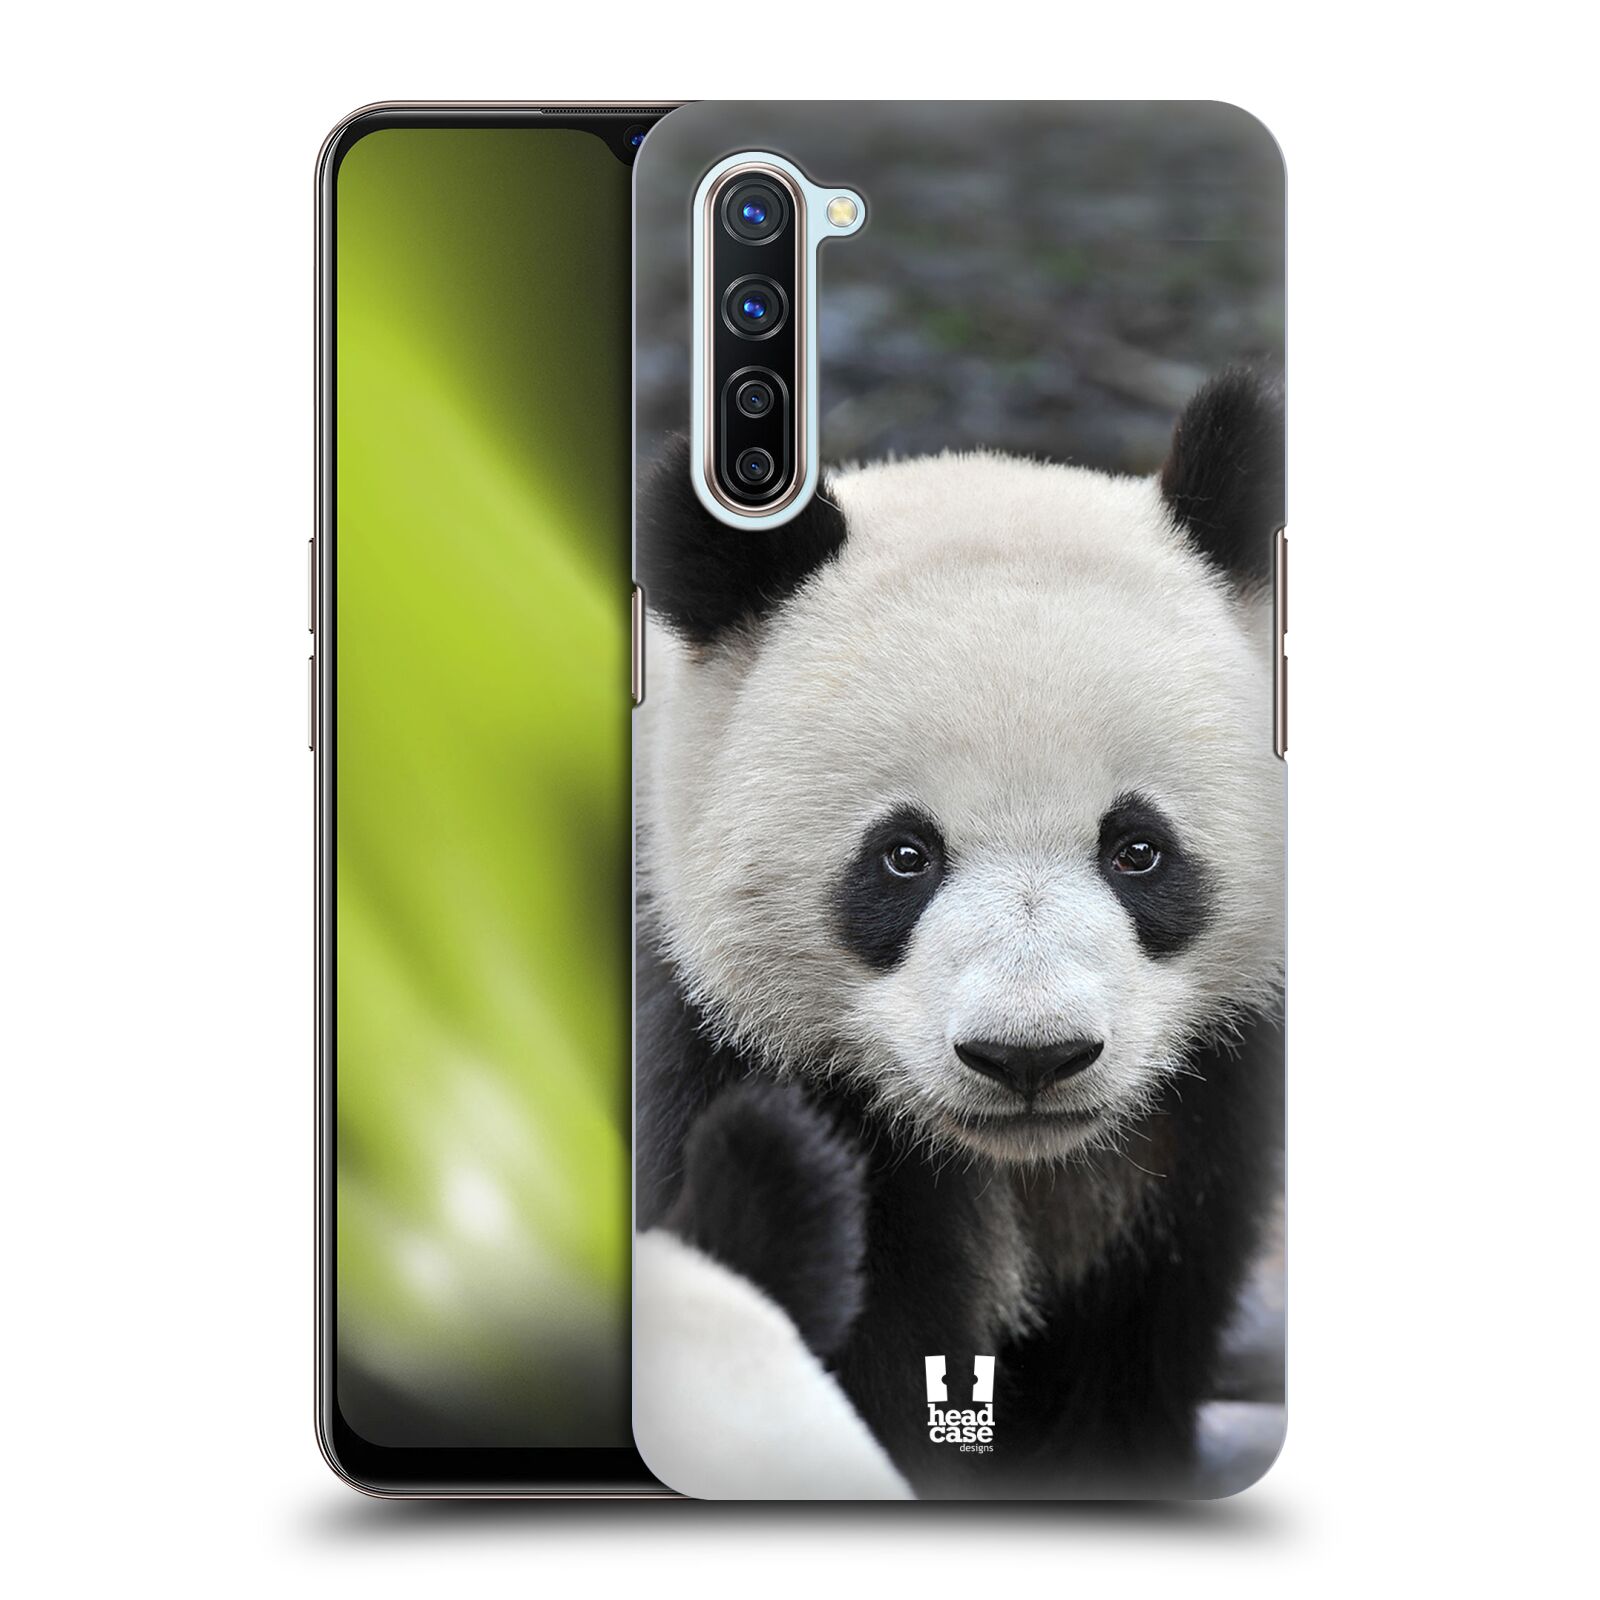 Zadní obal pro mobil Oppo Find X2 LITE - HEAD CASE - Svět zvířat medvěd panda